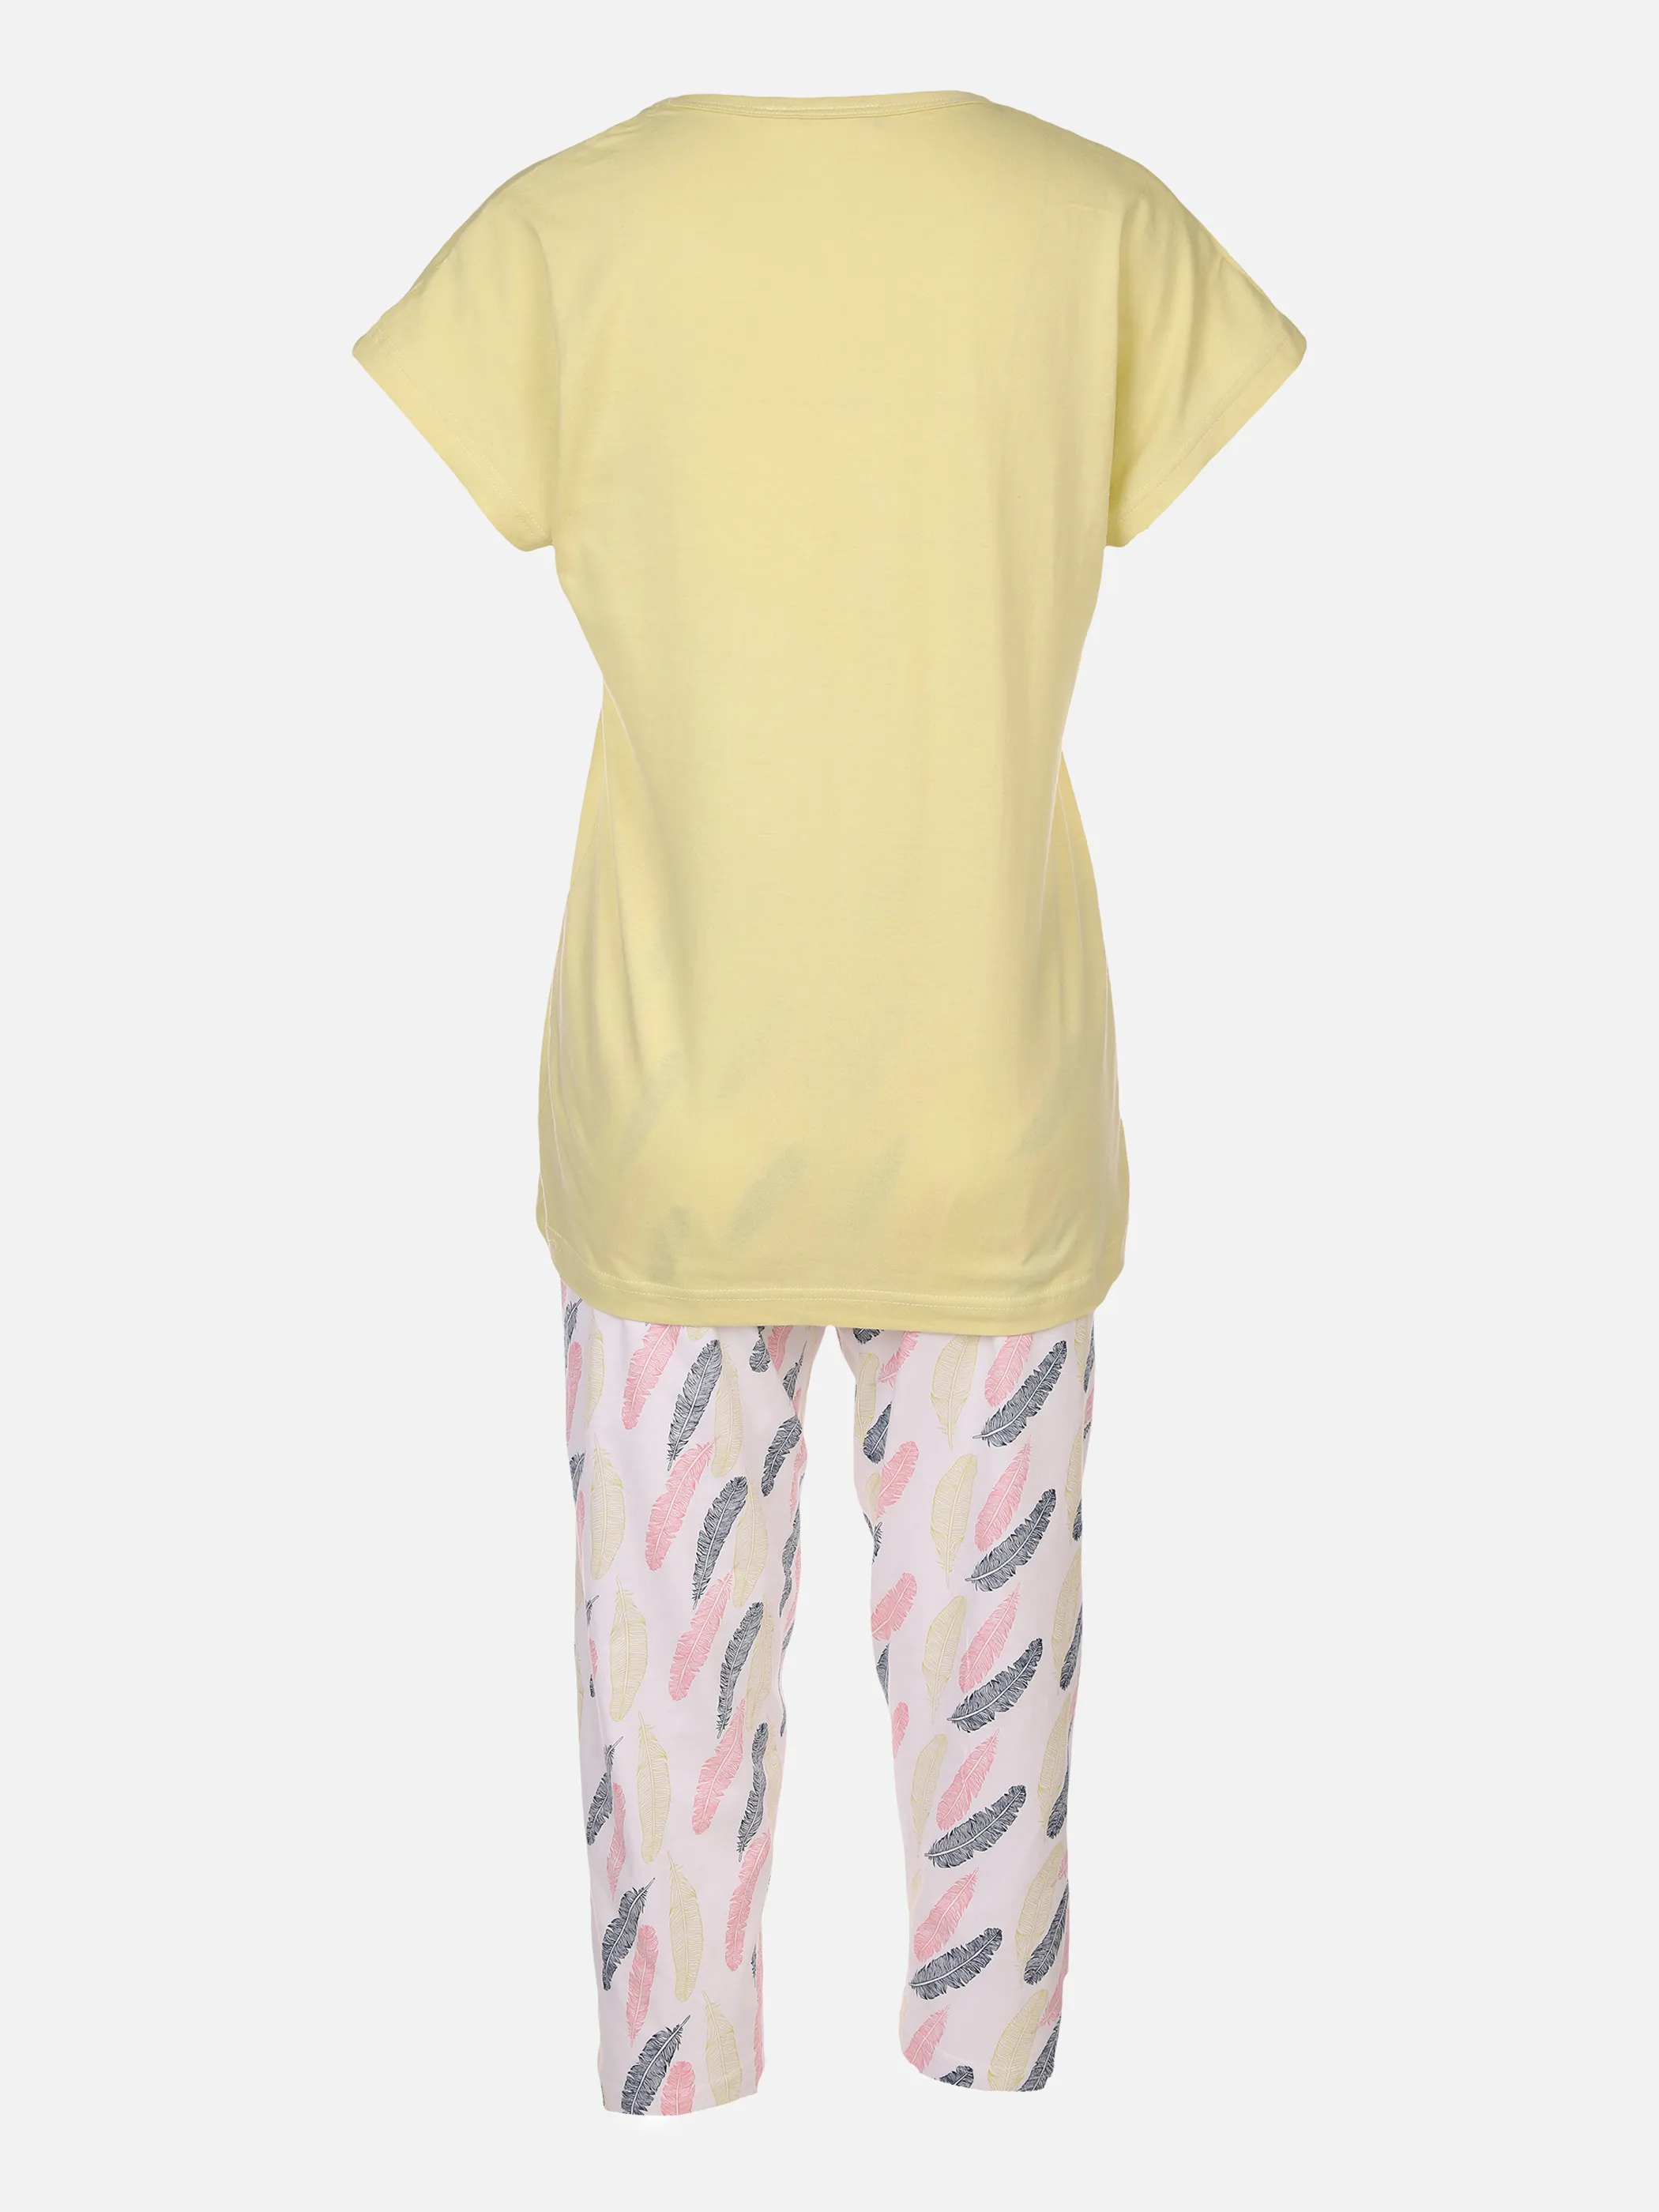 Sure Da Pyjama Shirt 1/2 Arm Hose C Grün 873690 GRÜN/WEIß 2